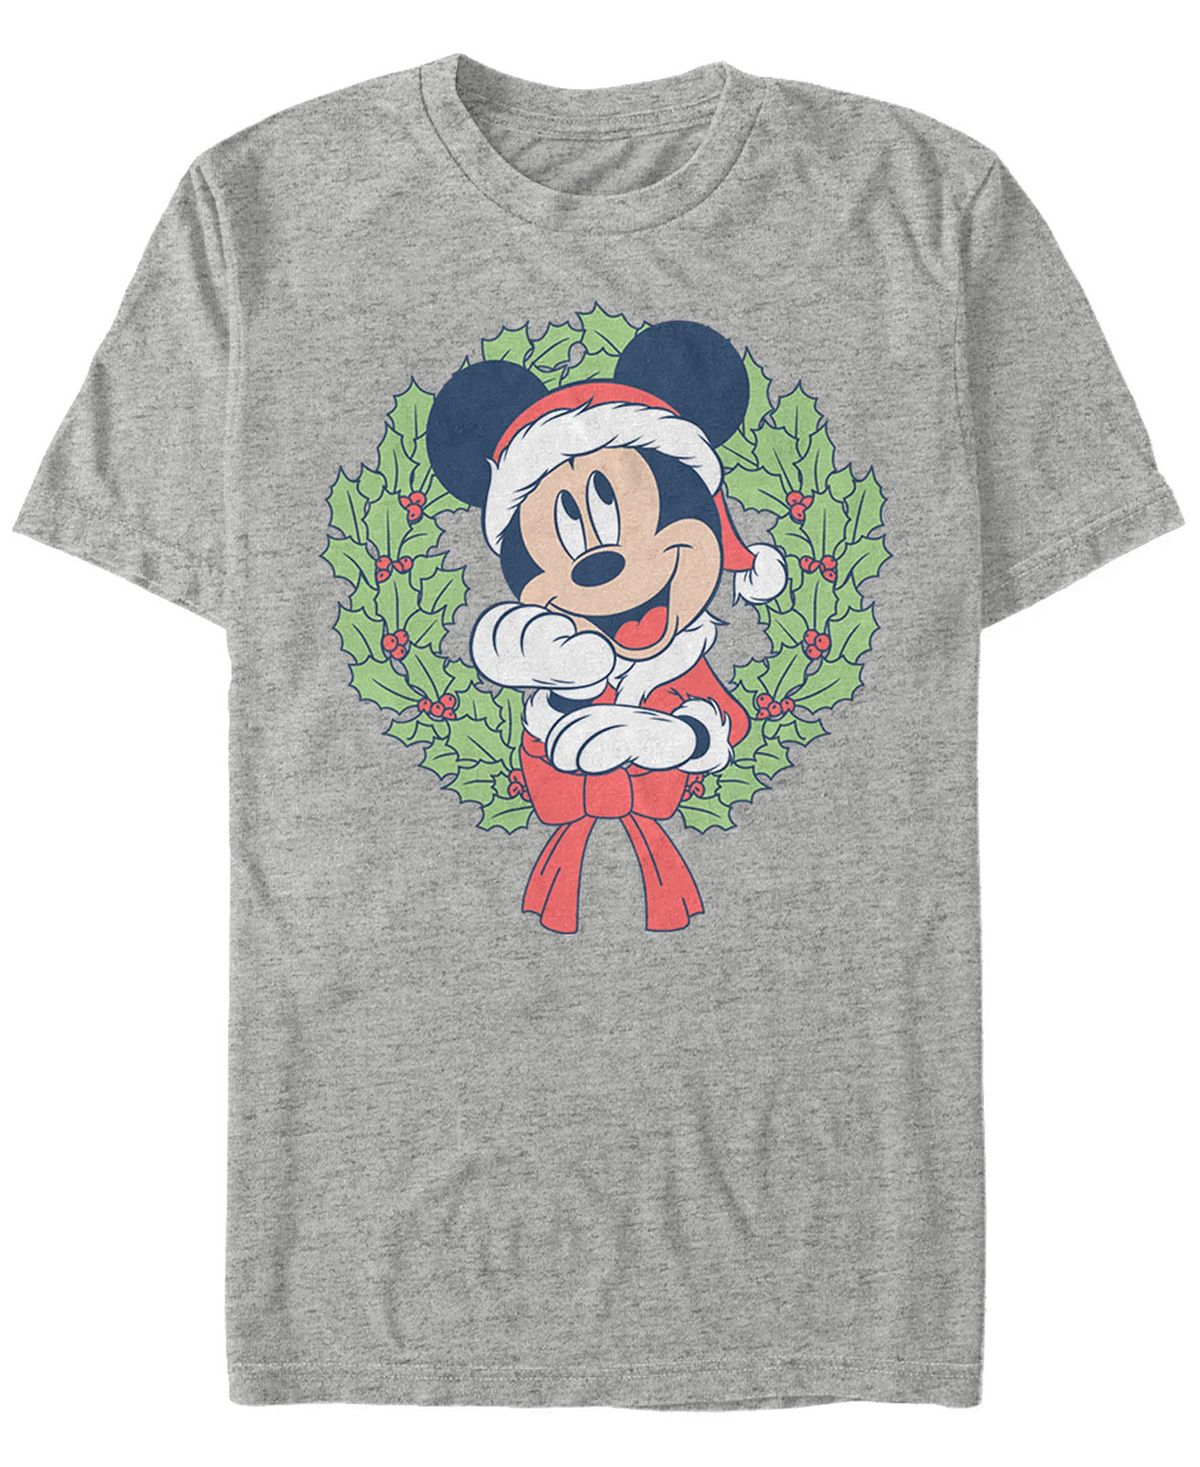 цена Мужская футболка с короткими рукавами mickey classic mickey christmas wreath Fifth Sun, мульти